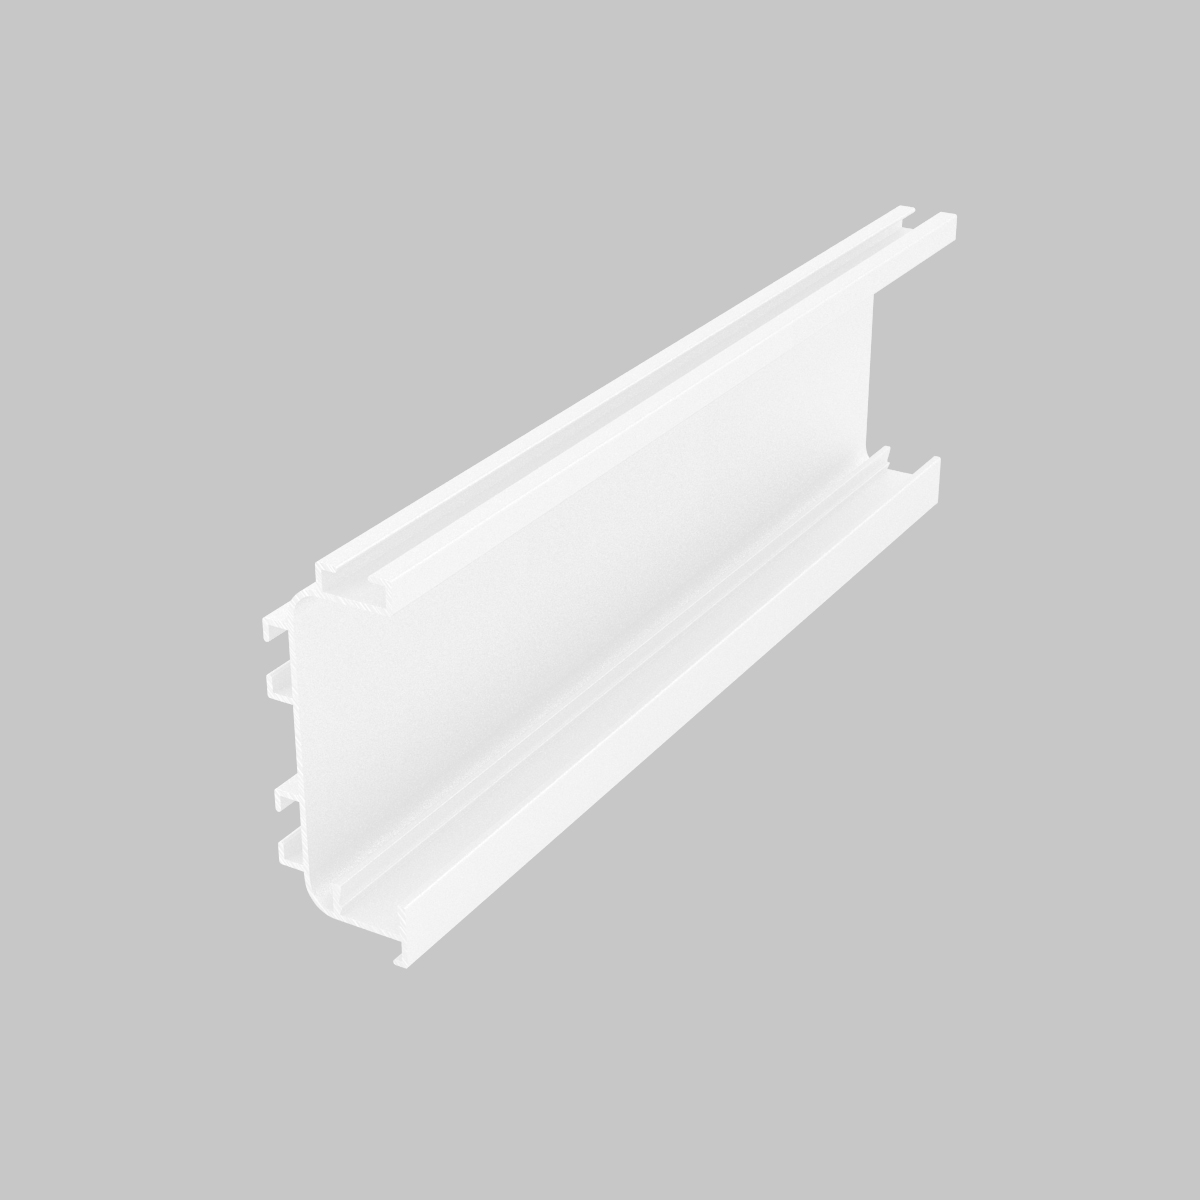 Профиль для кухонных баз "С" COMBI LED белый глянец с подсветкой 6м